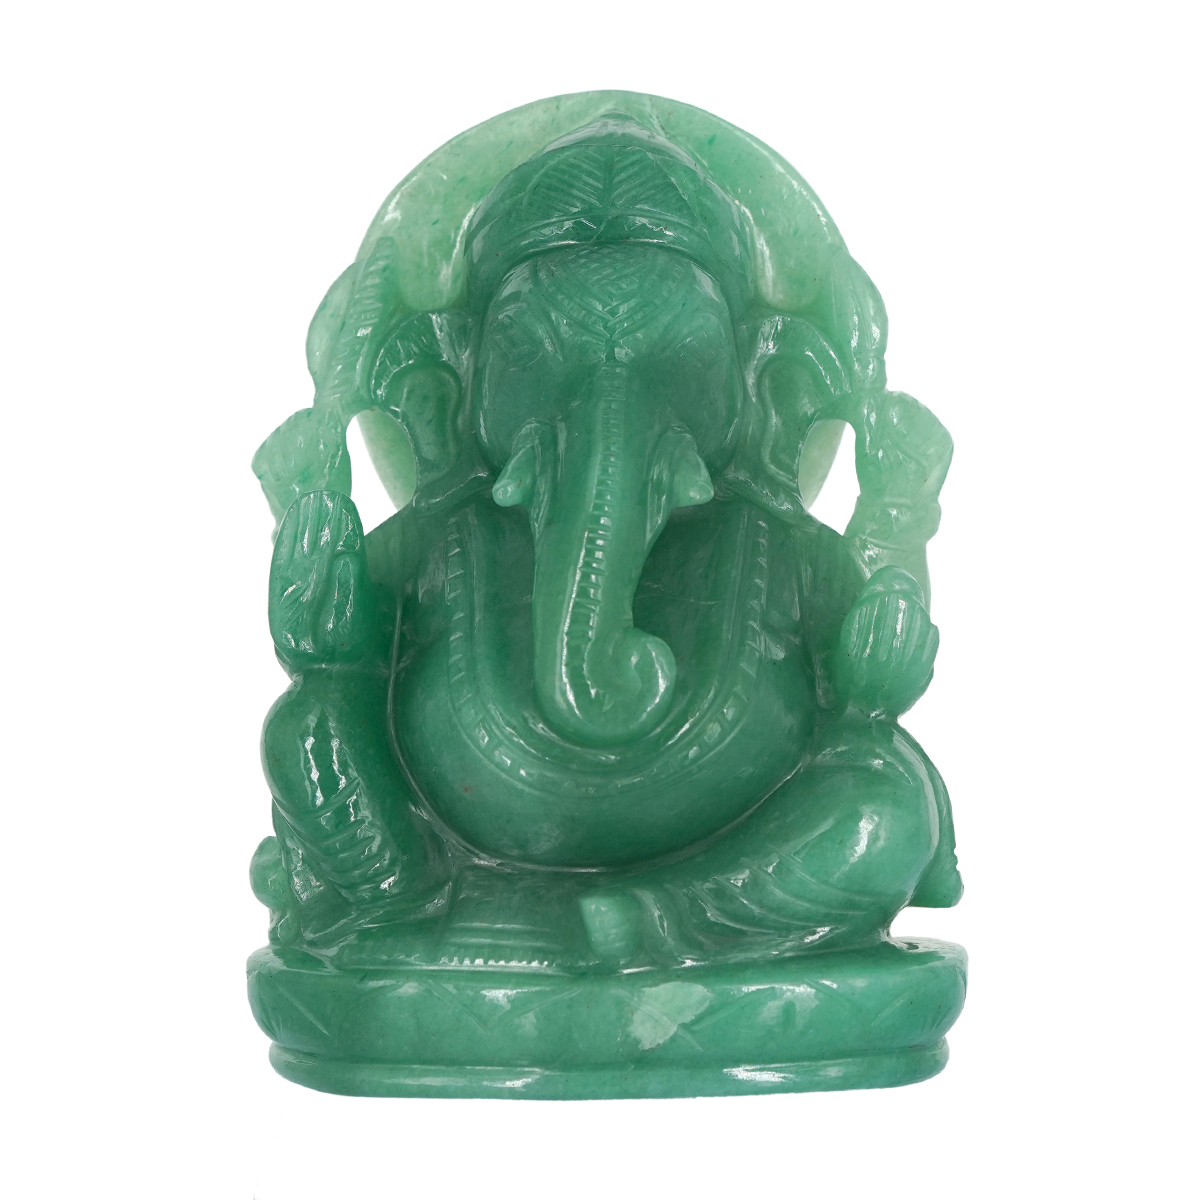 679.980Grams Green Ganesh | Marakatha Ganapathi | Natural Quartz ...